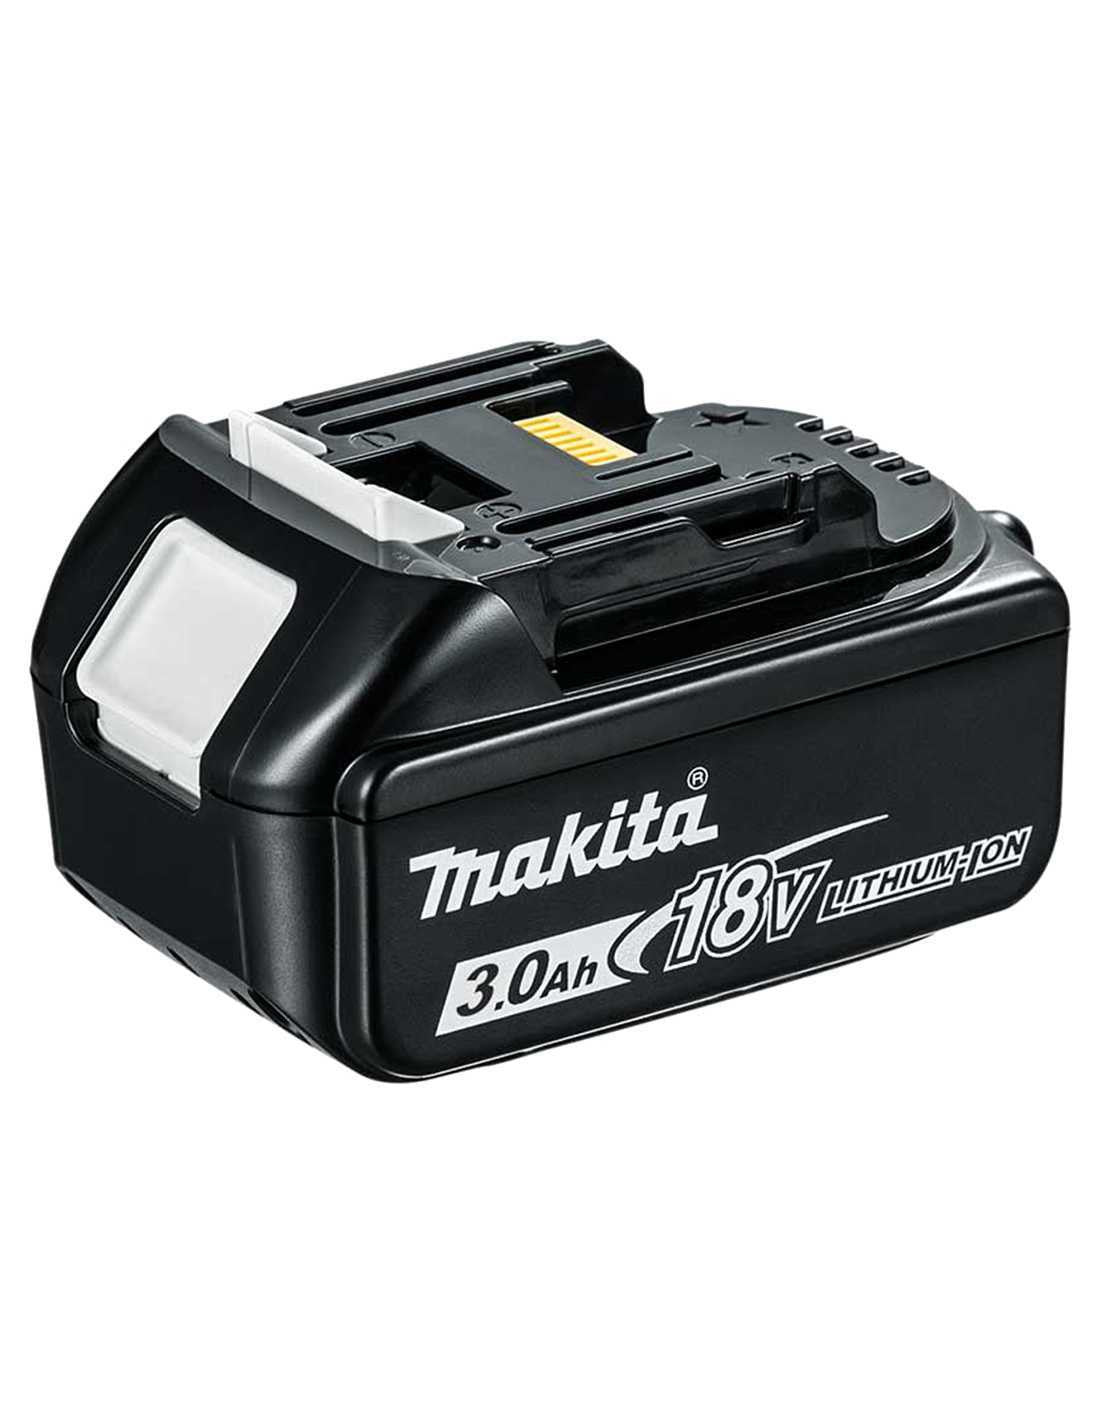 Makita-Set mit 7 Werkzeugen + 3 Bat 5 Ah + Ladegerät DC18RC + 2 Taschen DLX7243BL3